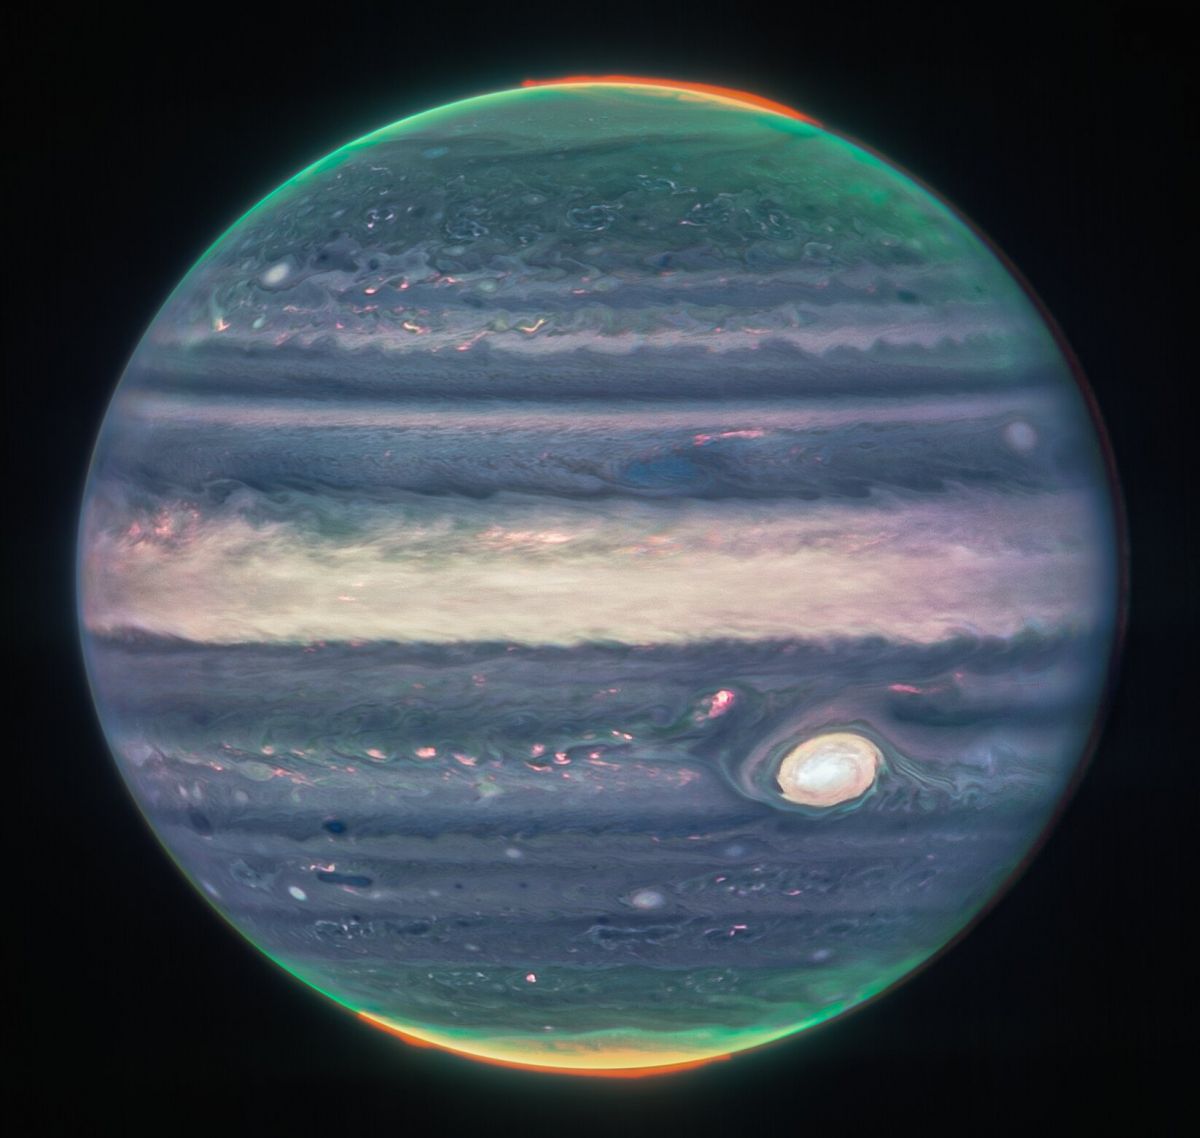 Телескоп Уэбба показал удивительную детализацию Юпитера - фото